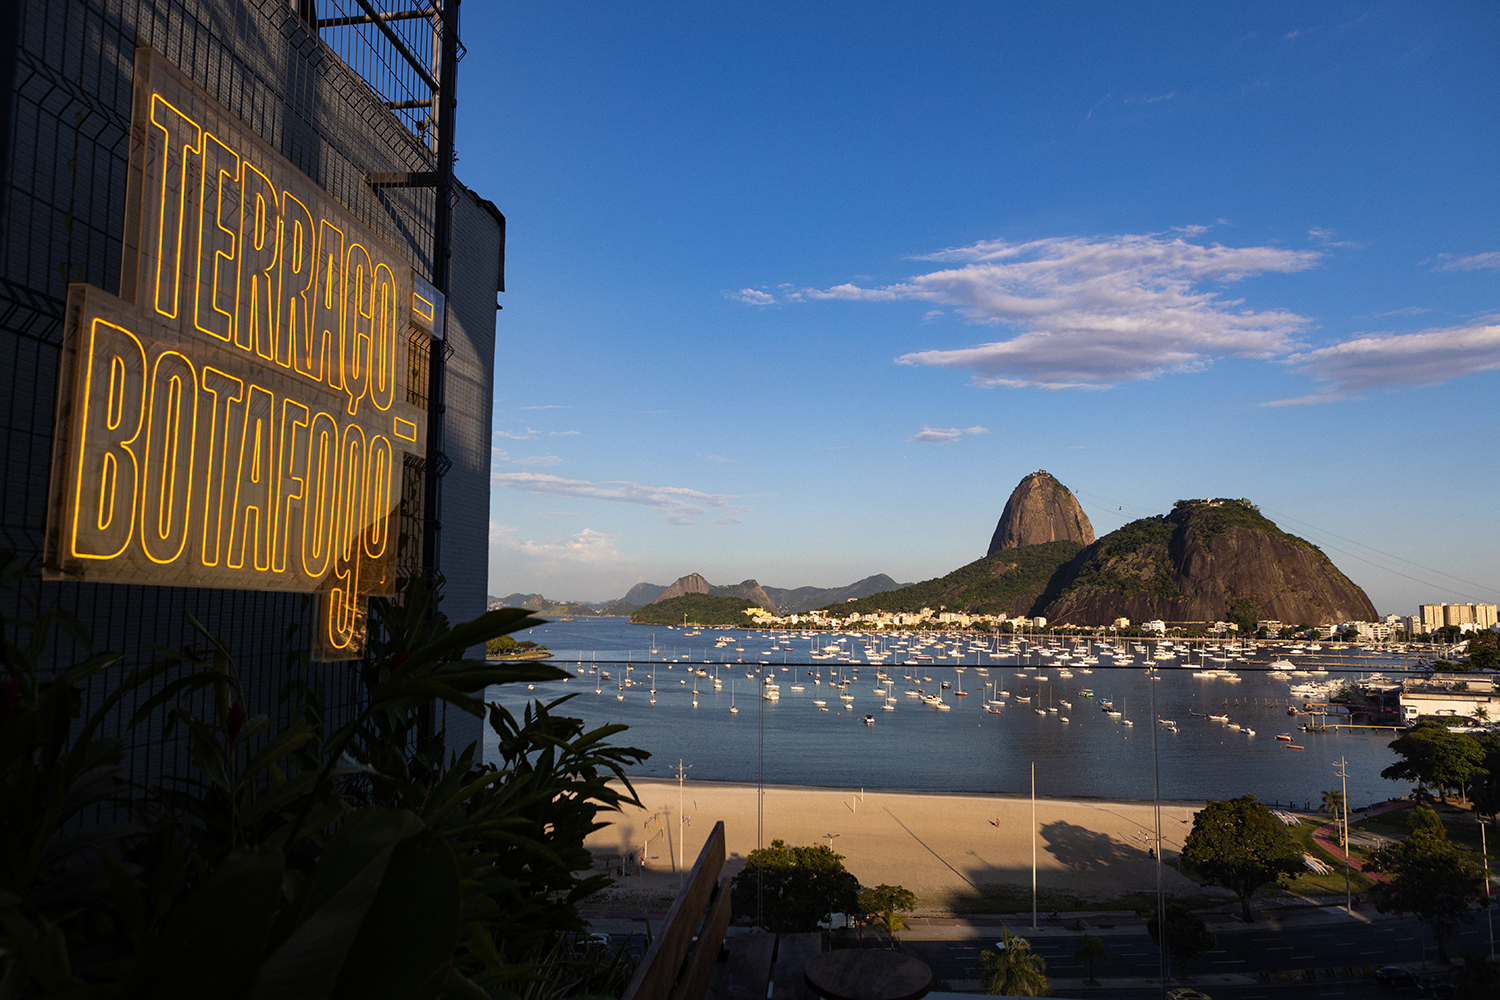 Terraço Botafogo vende vista e cerveja de qualidade no Botafogo Praia Shopping